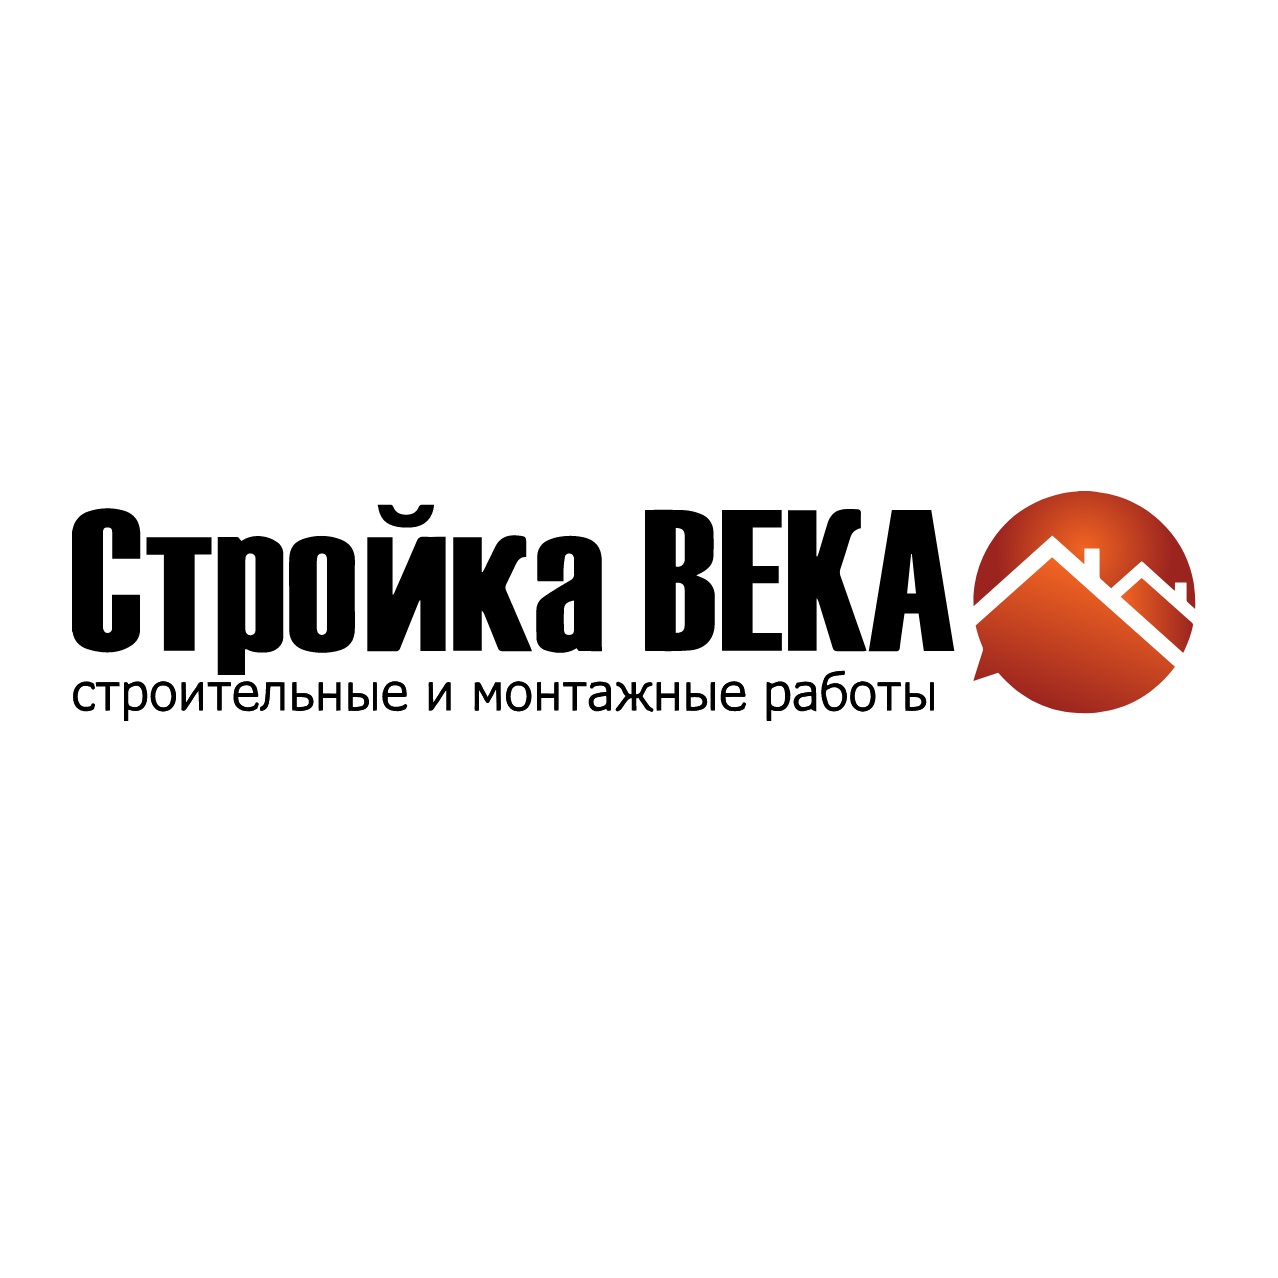 Фото / логотип Стройка Века, Новосибирск